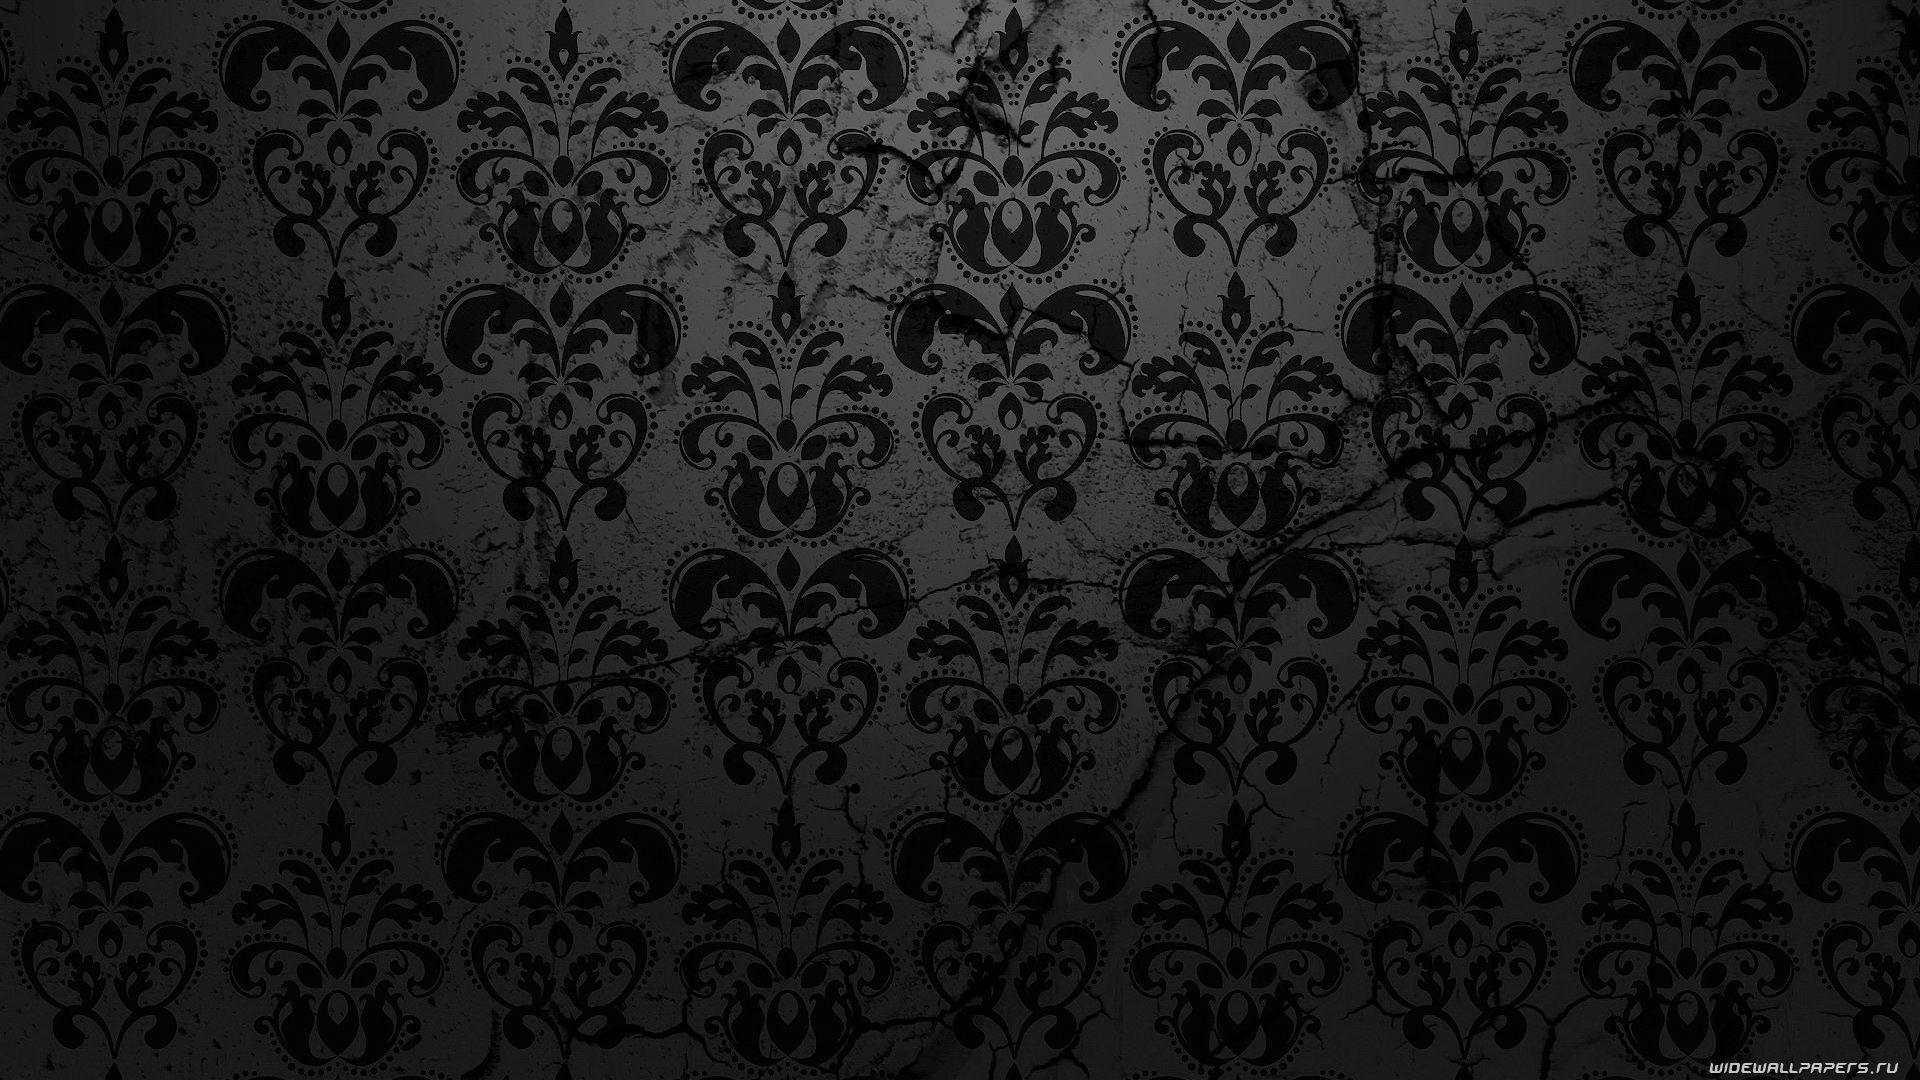 Ornate Black Lace Desktop Wallpaper Wallpaper. Viewallpaper